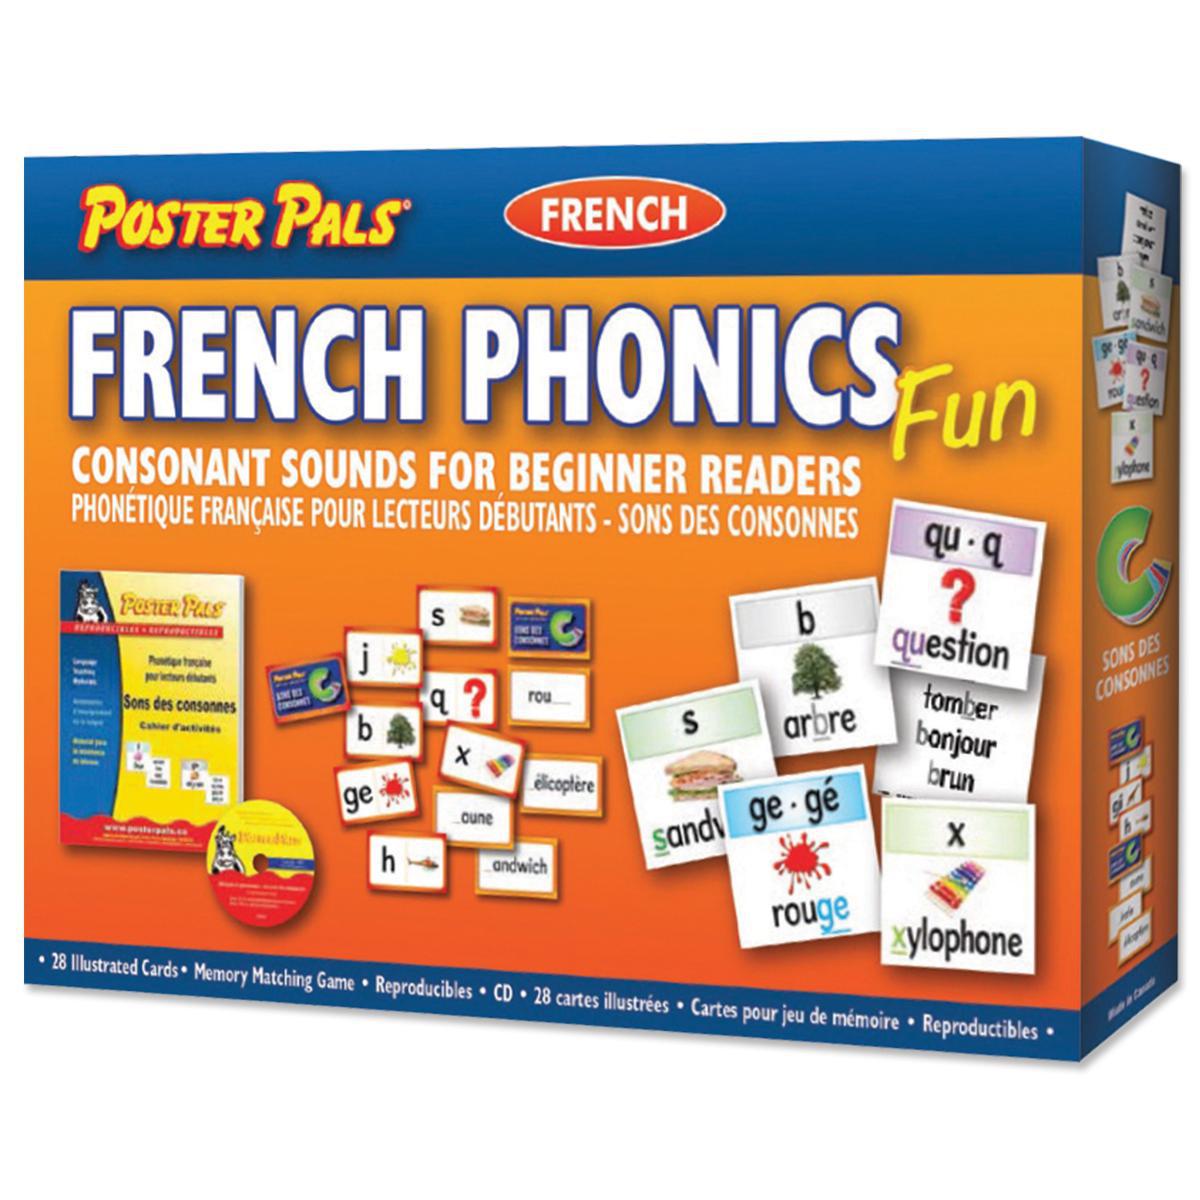  French Phonics Fun Les consonnes pour les lecteurs débutants